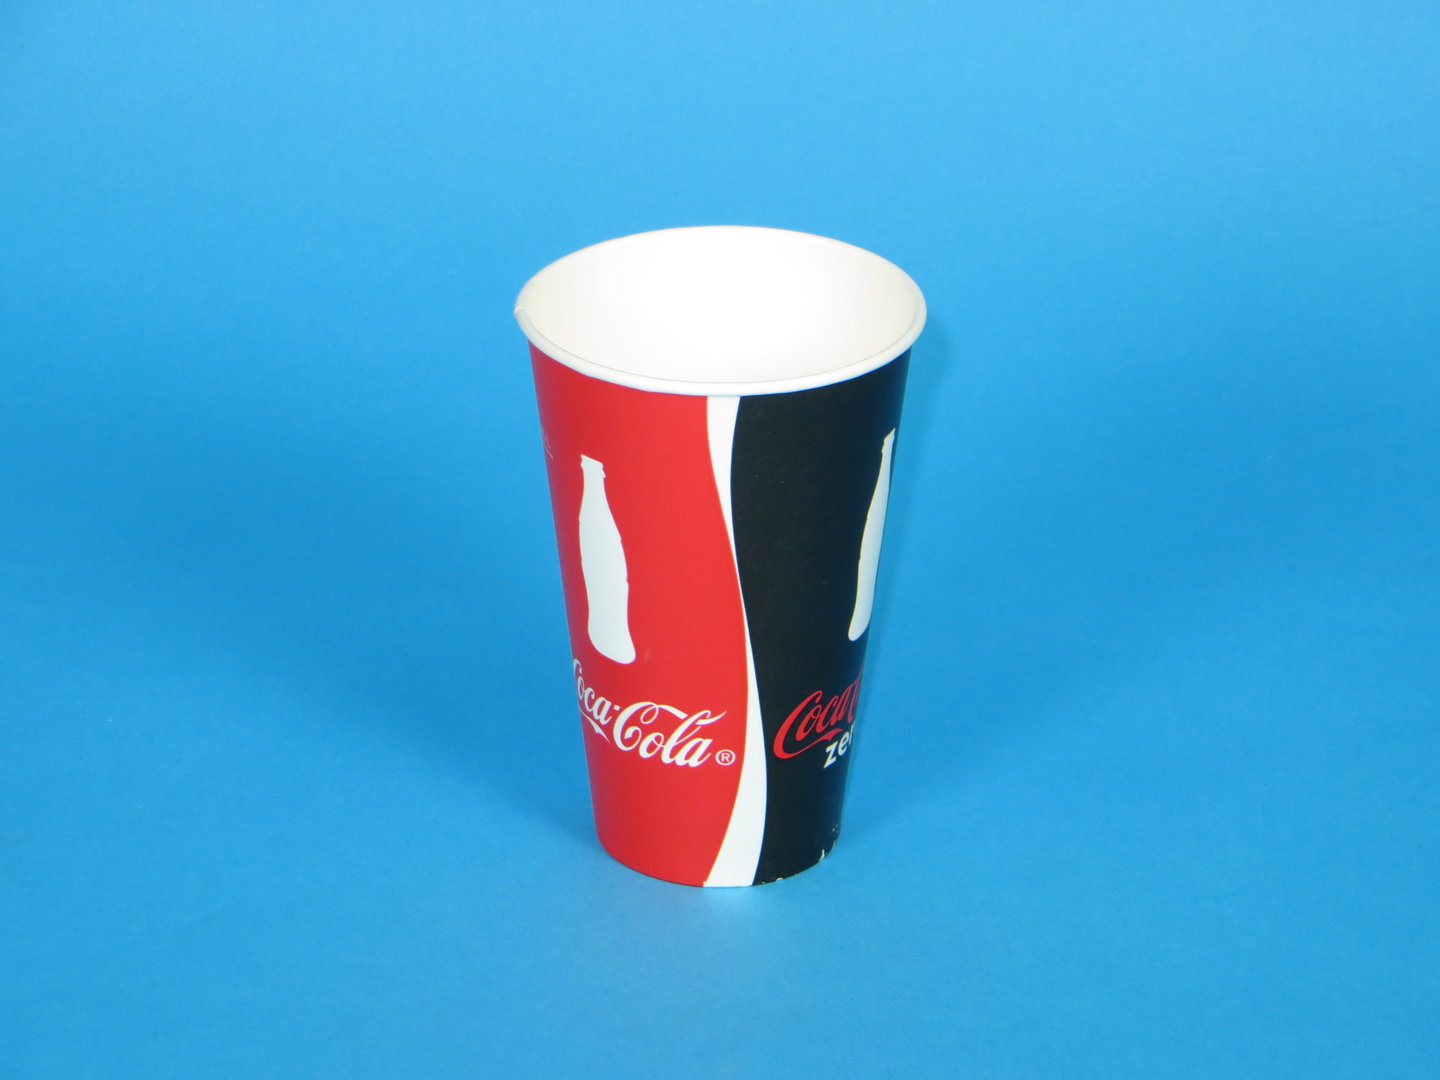 Coca cola becher - Die qualitativsten Coca cola becher im Vergleich